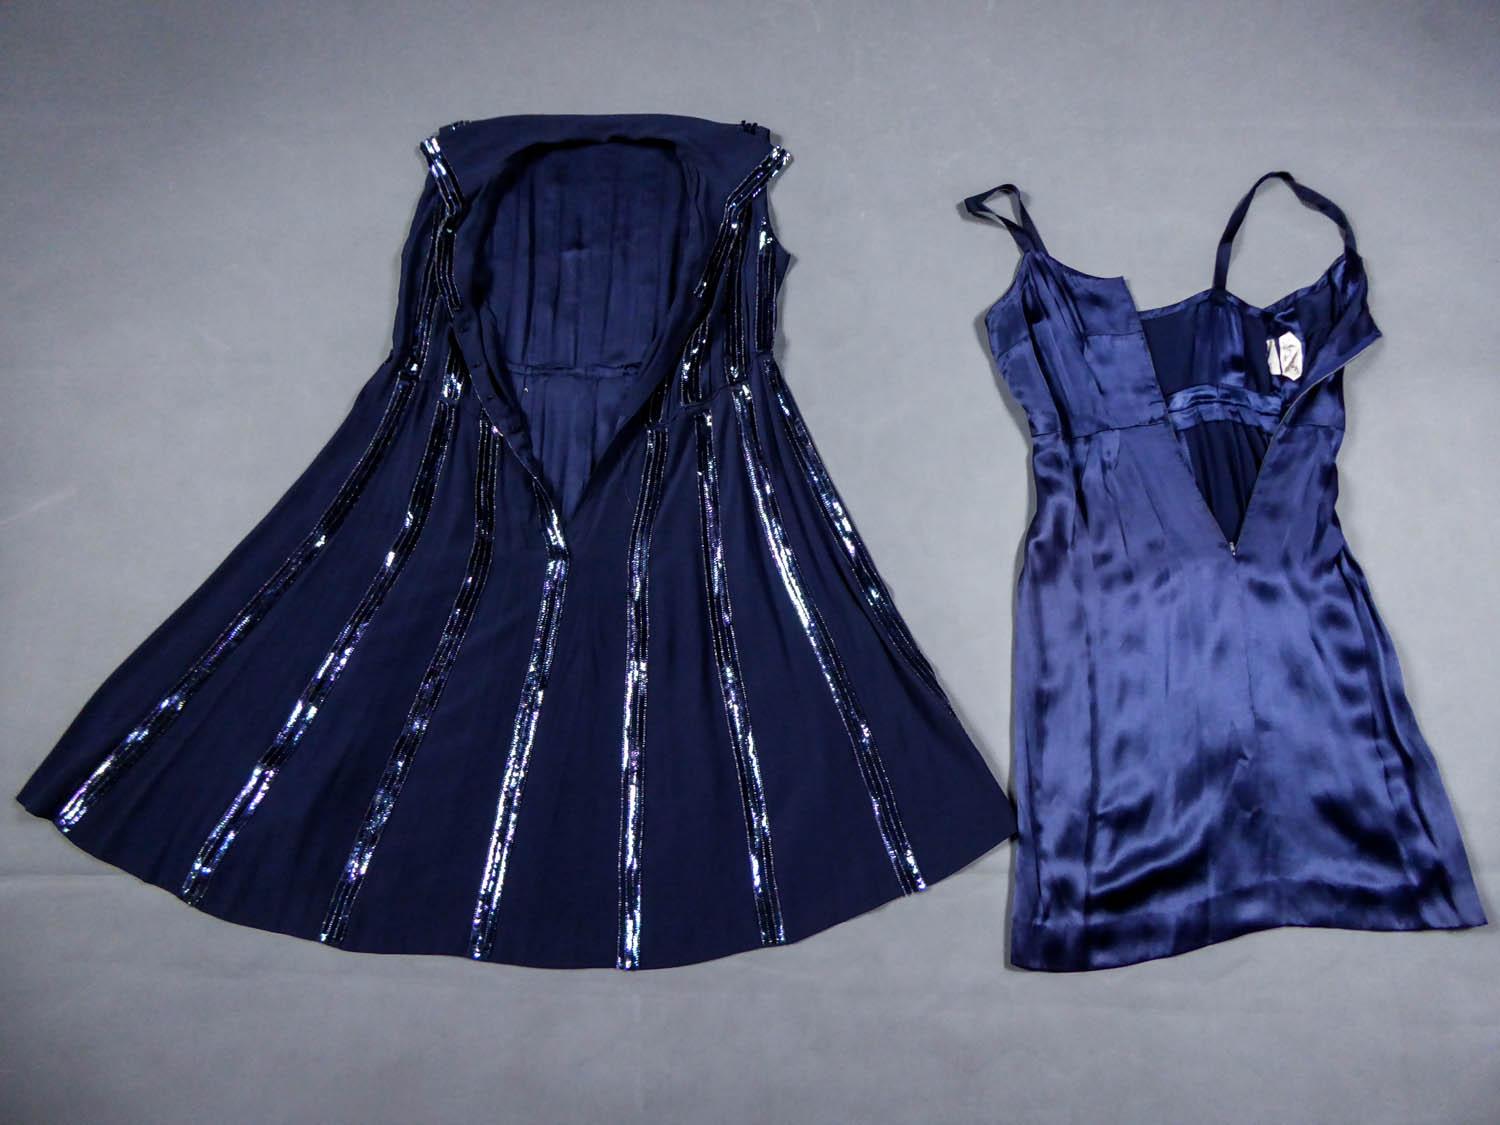 Um 1960
Frankreich / England 

Wertvolles Cocktailkleid aus marineblauem Seidenkrepp mit horizontalen Streifen, bestickt mit schillerndem marineblauem Glitter und durchscheinenden Perlen, aus der letzten Periode des berühmten Hauses. Gerader,